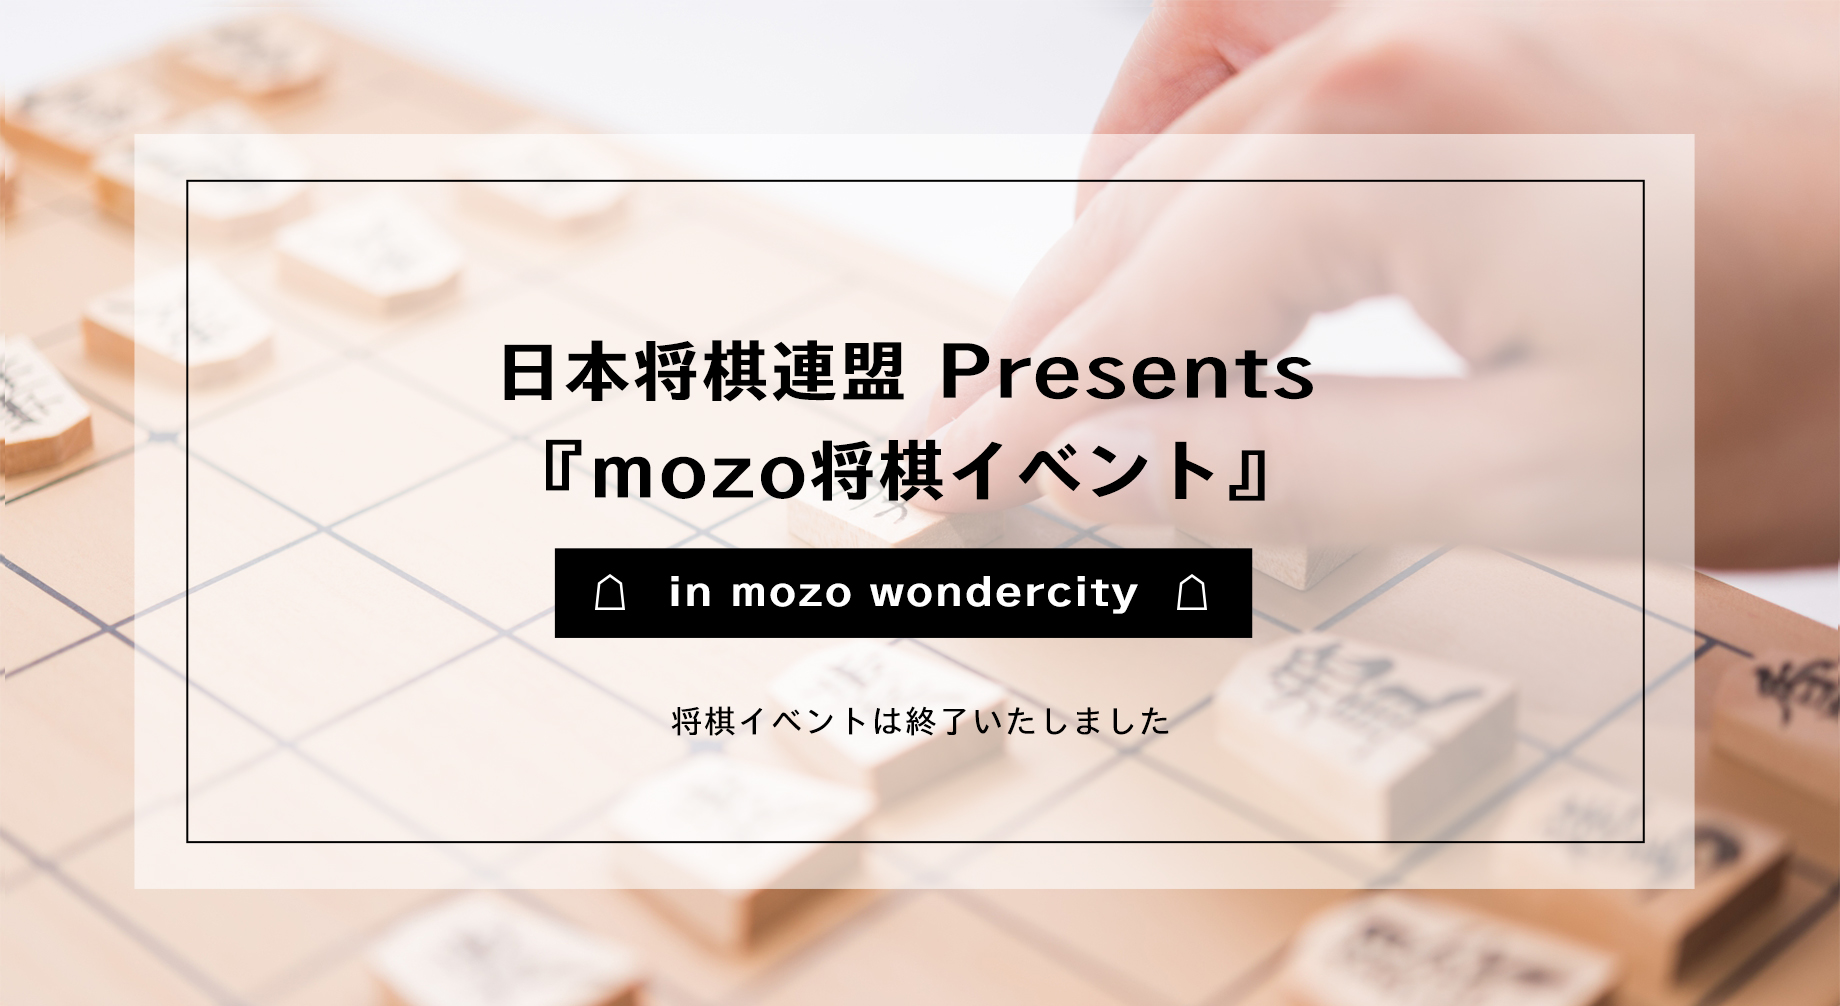 日本将棋連盟 Presents『mozo将棋イベント』